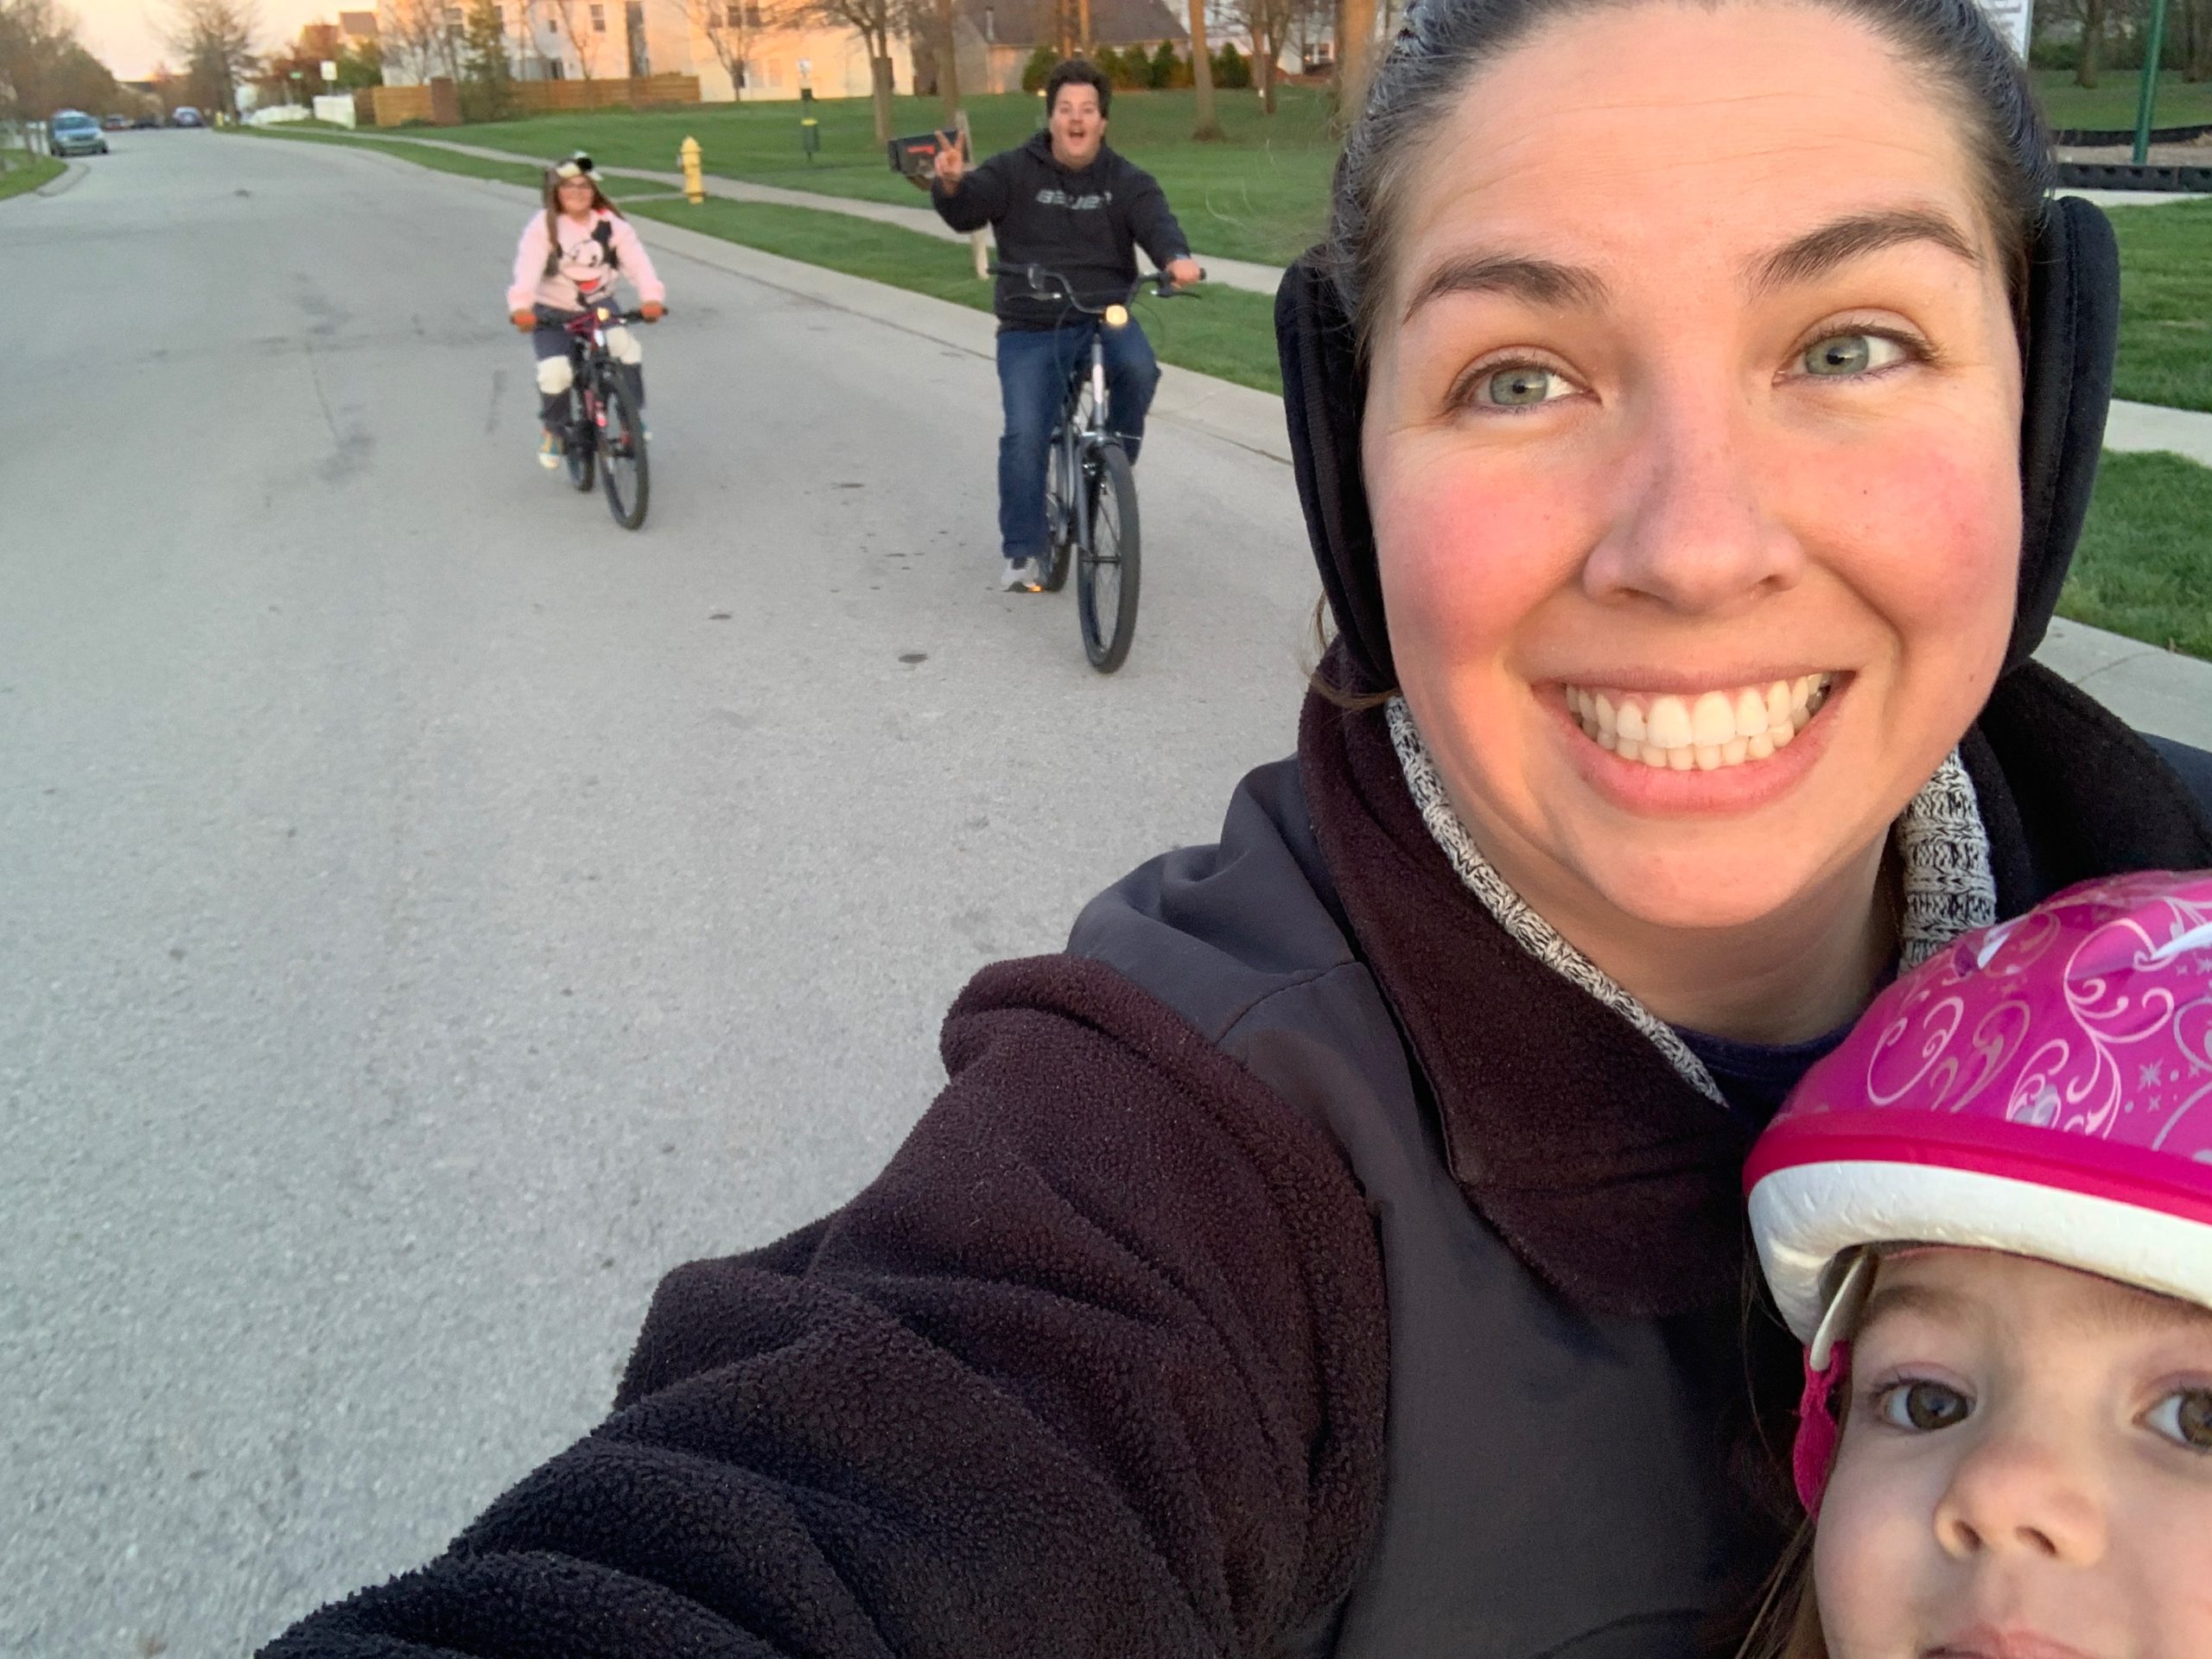 family riding bikes